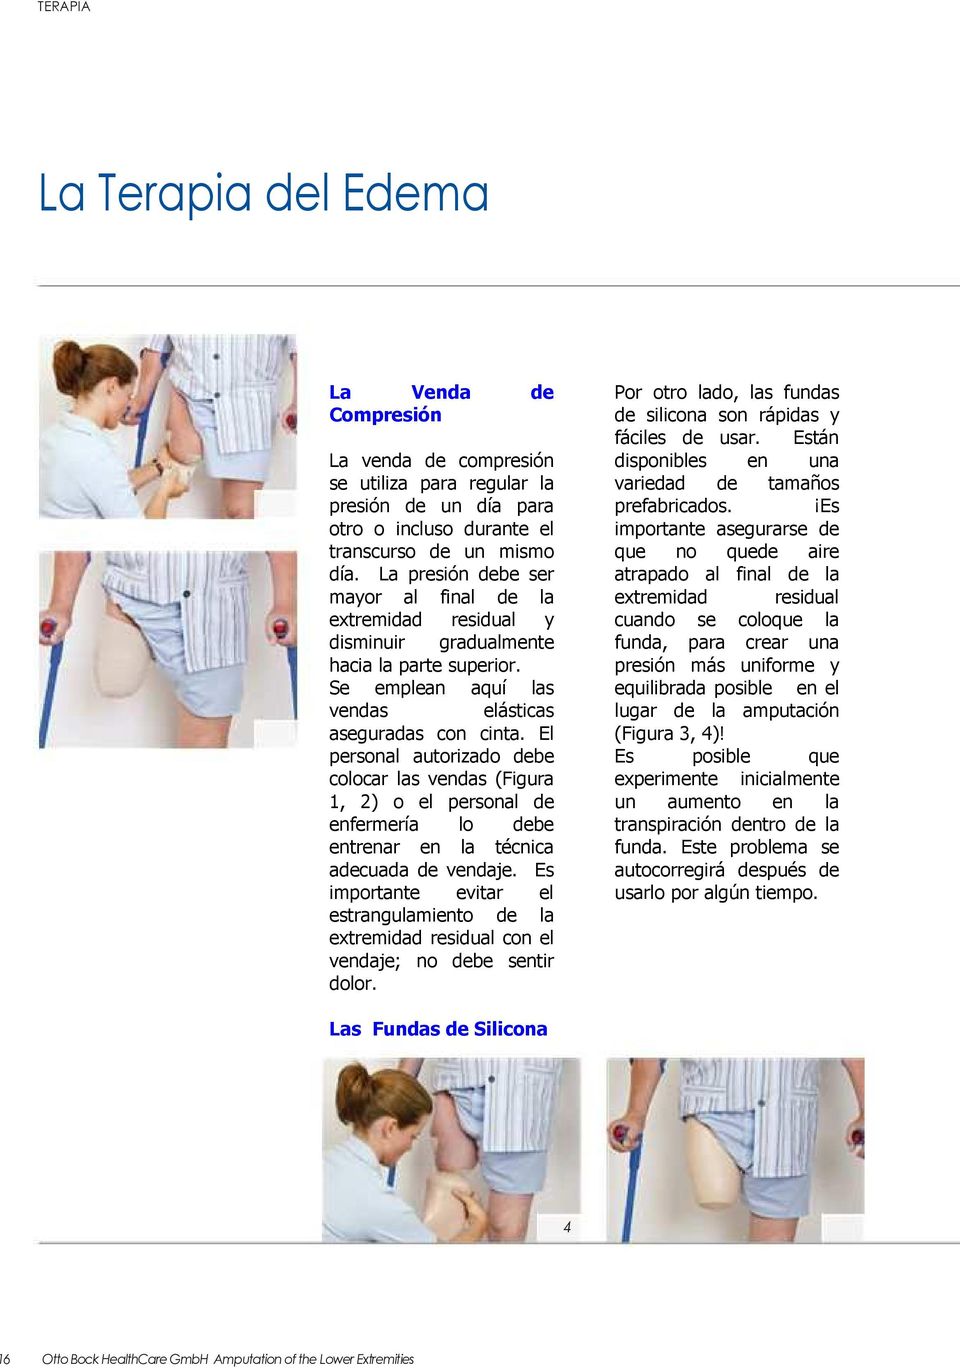 El personal autorizado debe colocar las vendas (Figura 1, 2) o el personal de enfermería lo debe entrenar en la técnica adecuada de vendaje.